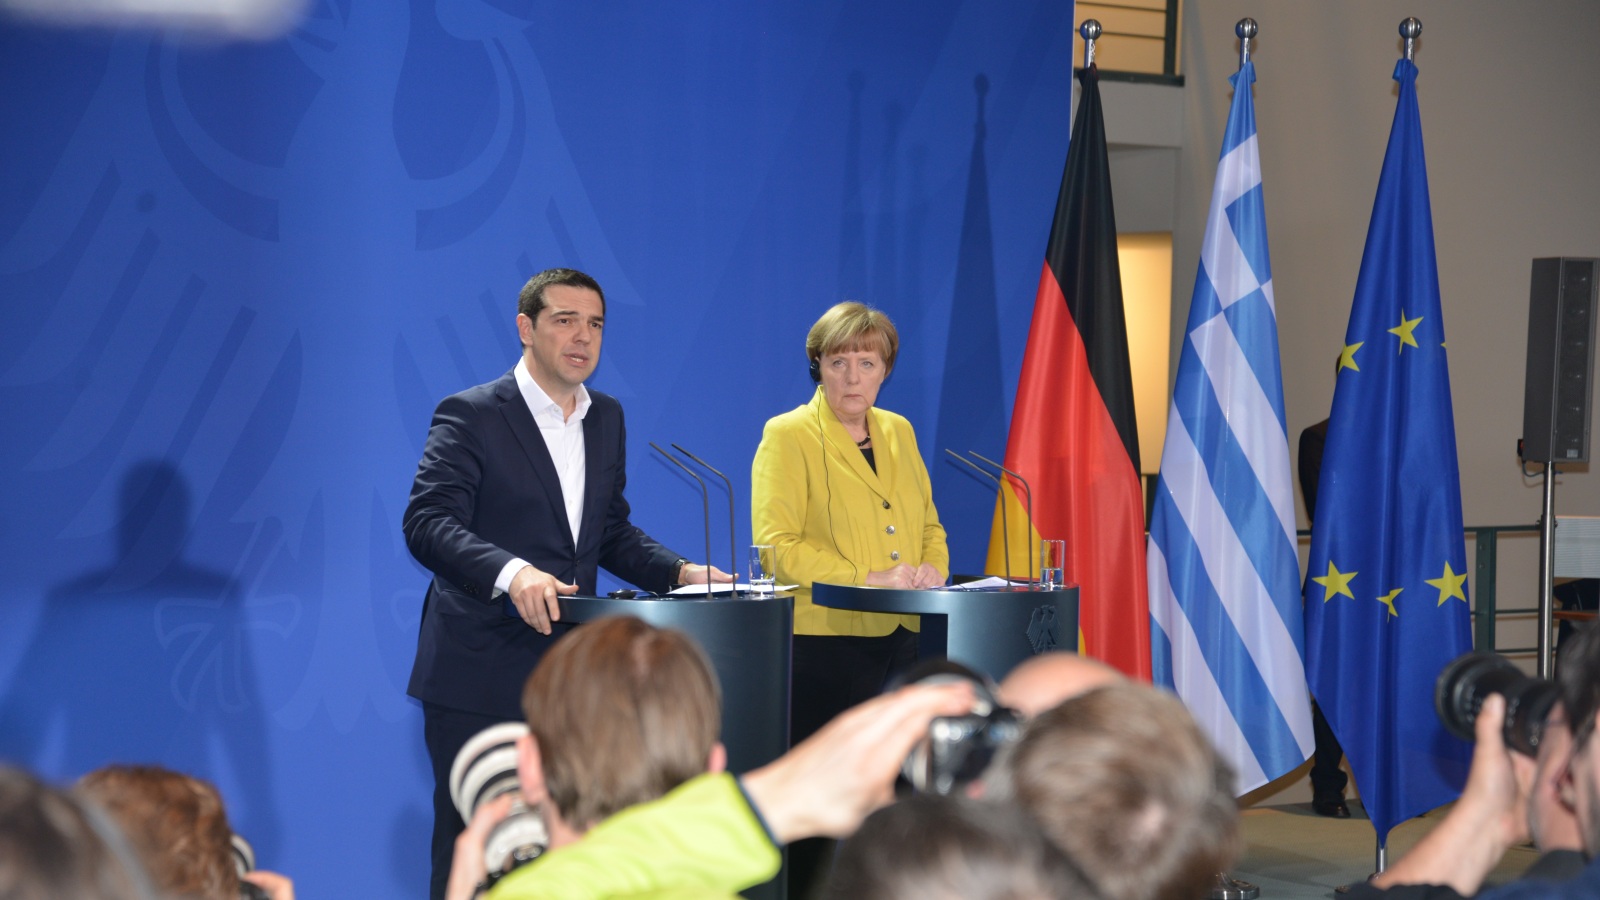 المستشارة الألمانية اقترحت خروجا مؤقتا لليونان من منطقة اليورو (الجزيرة نت)